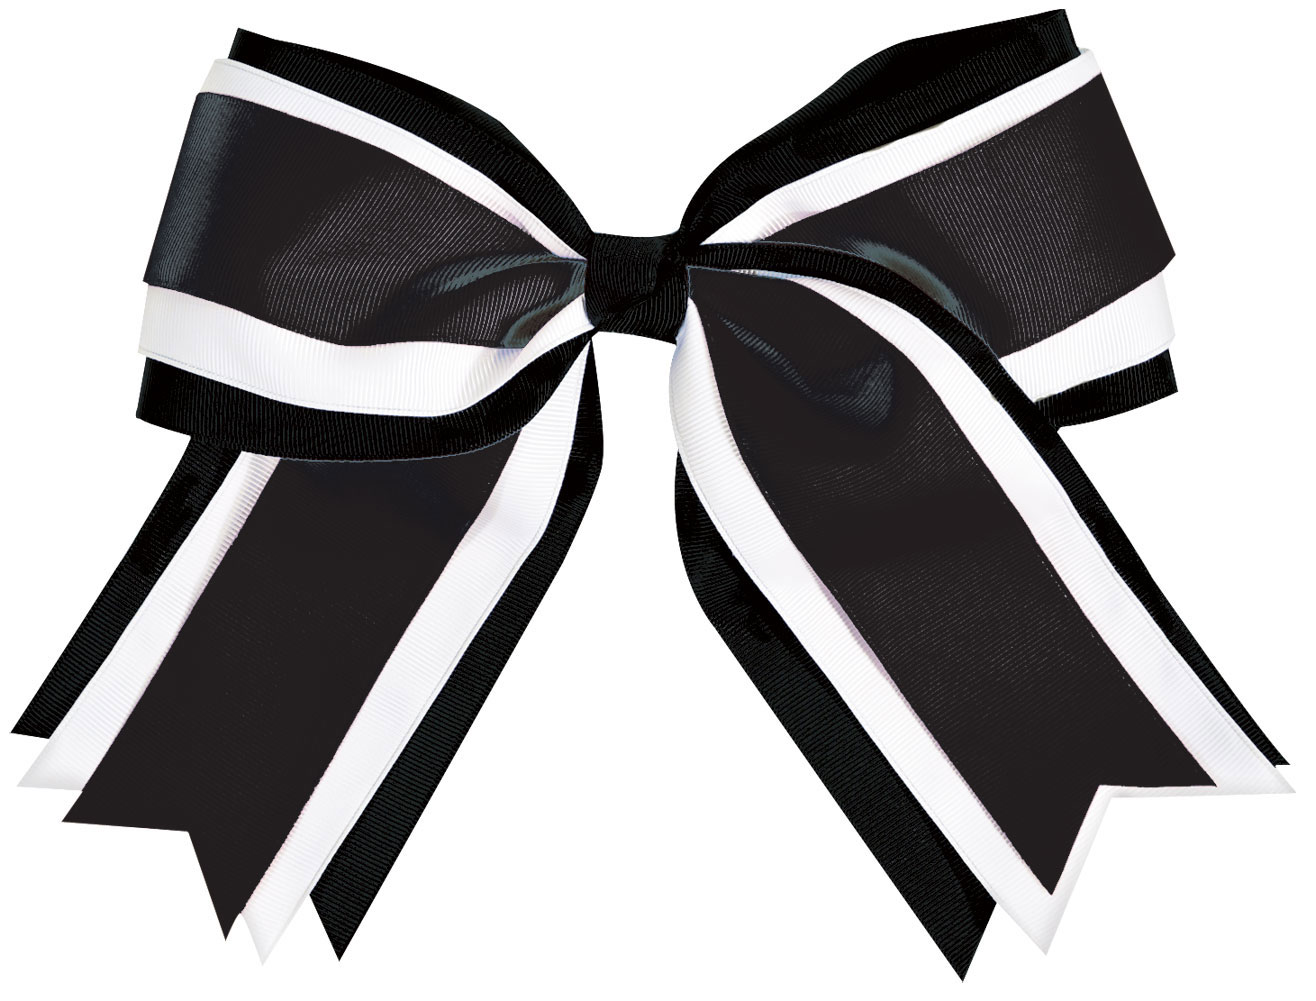 Cheer bows clip art 